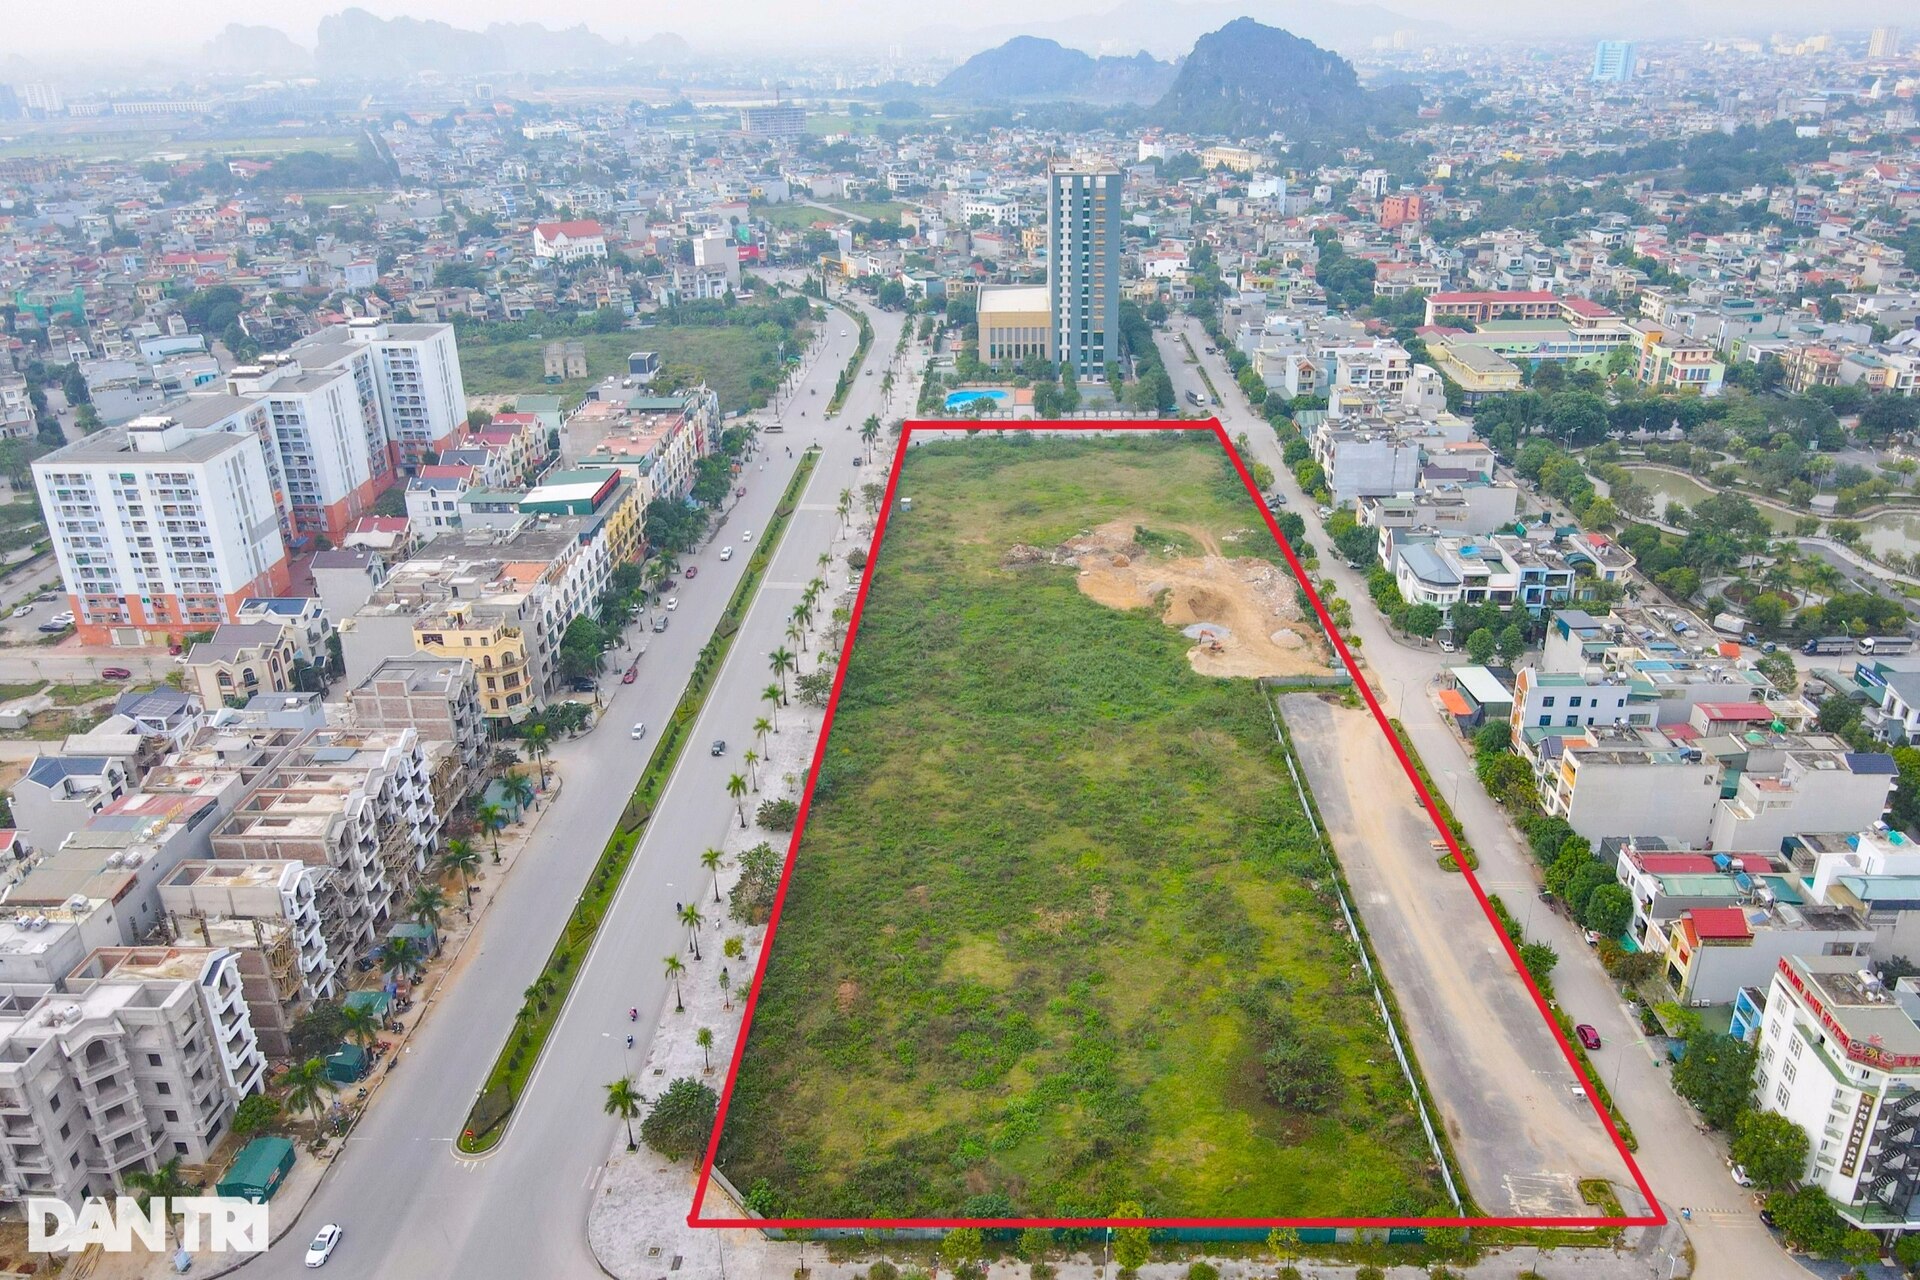 Hàng loạt dự án trên đất vàng ở Thanh Hóa bị bỏ hoang - 7